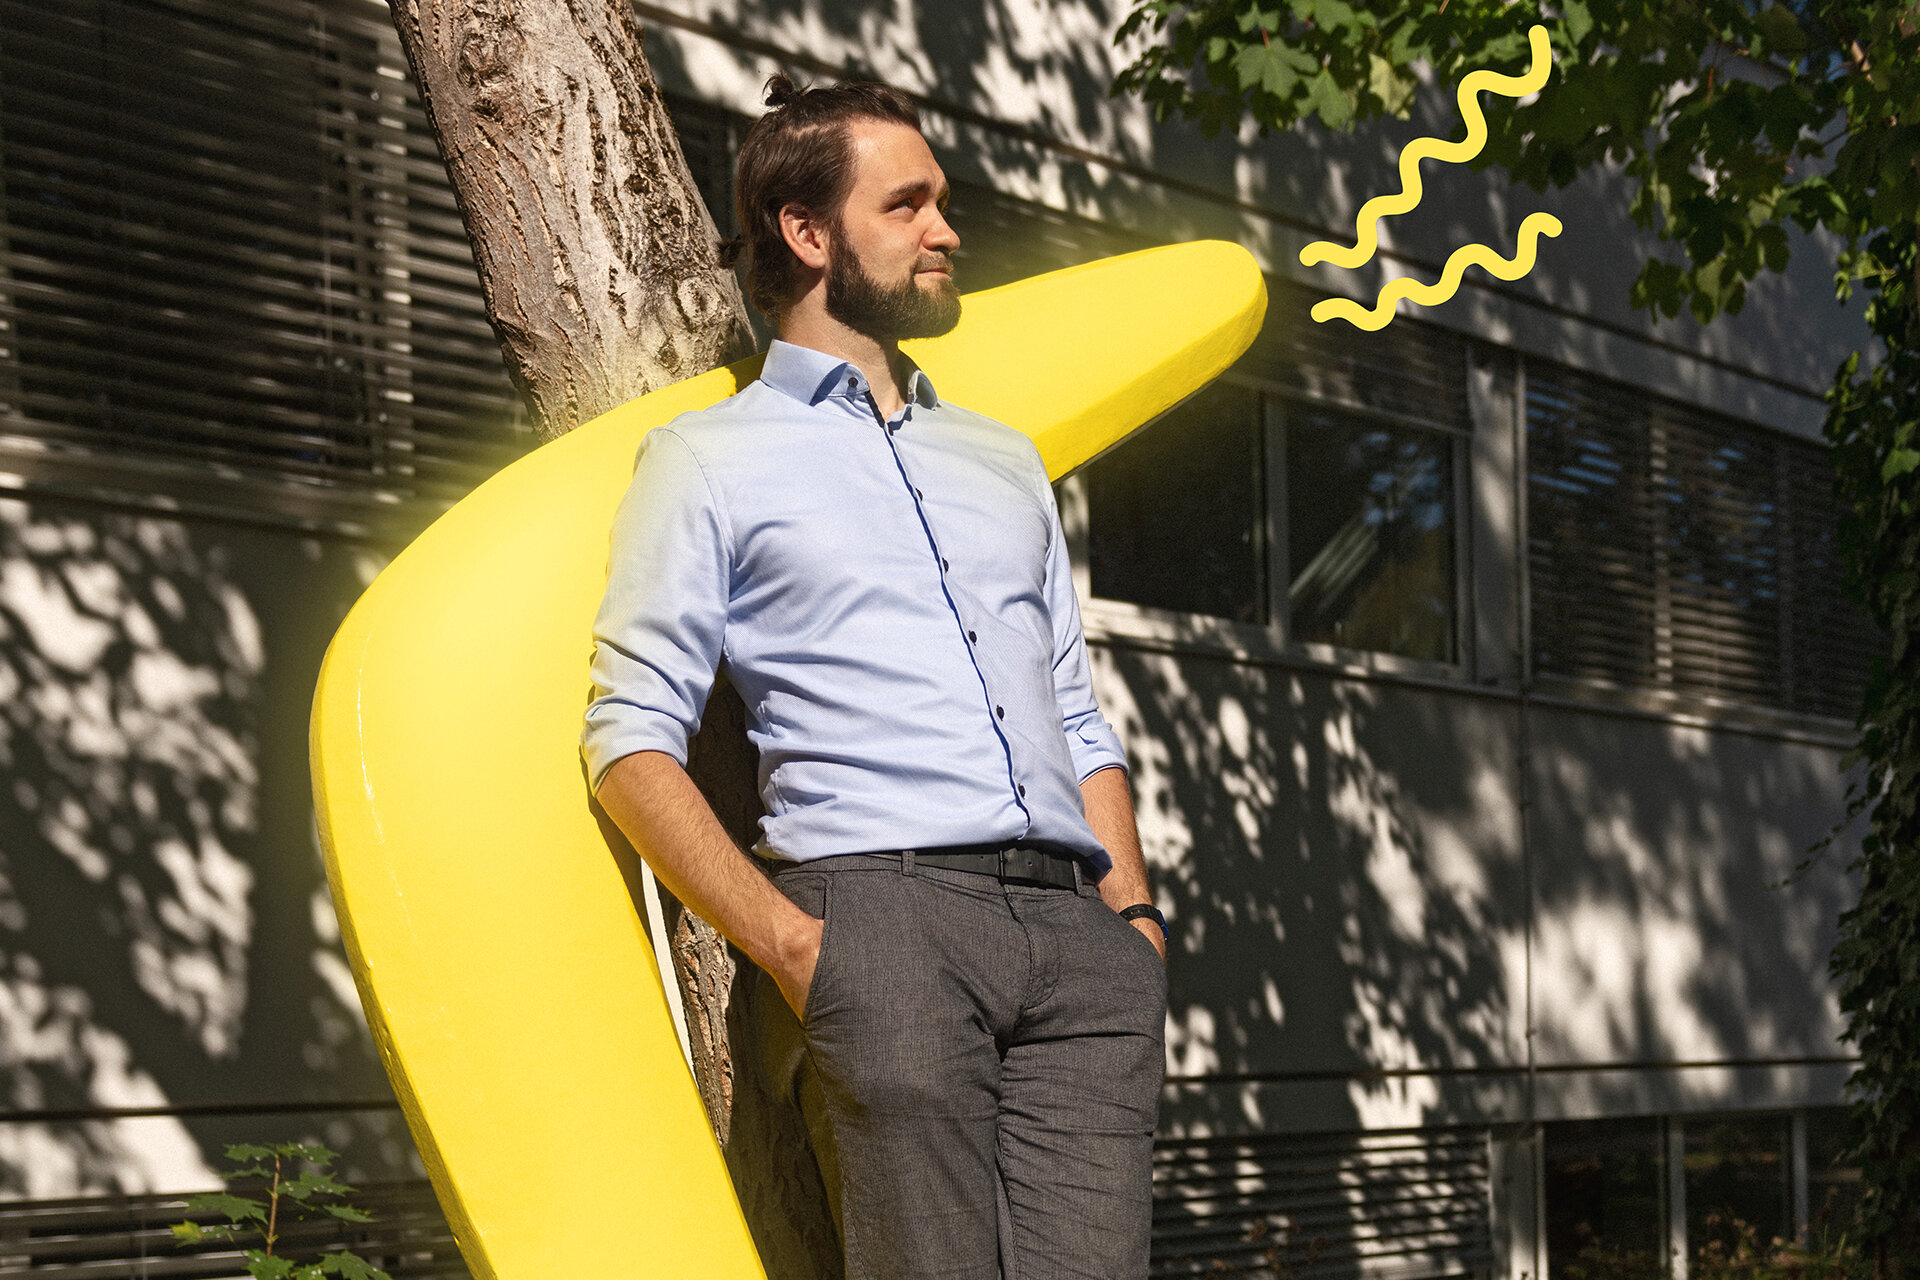 Mann im Businessoutfit lehnt vor einem menschengroßen, gelben Bumerang an einem Baum vor einem Bürogebäude.